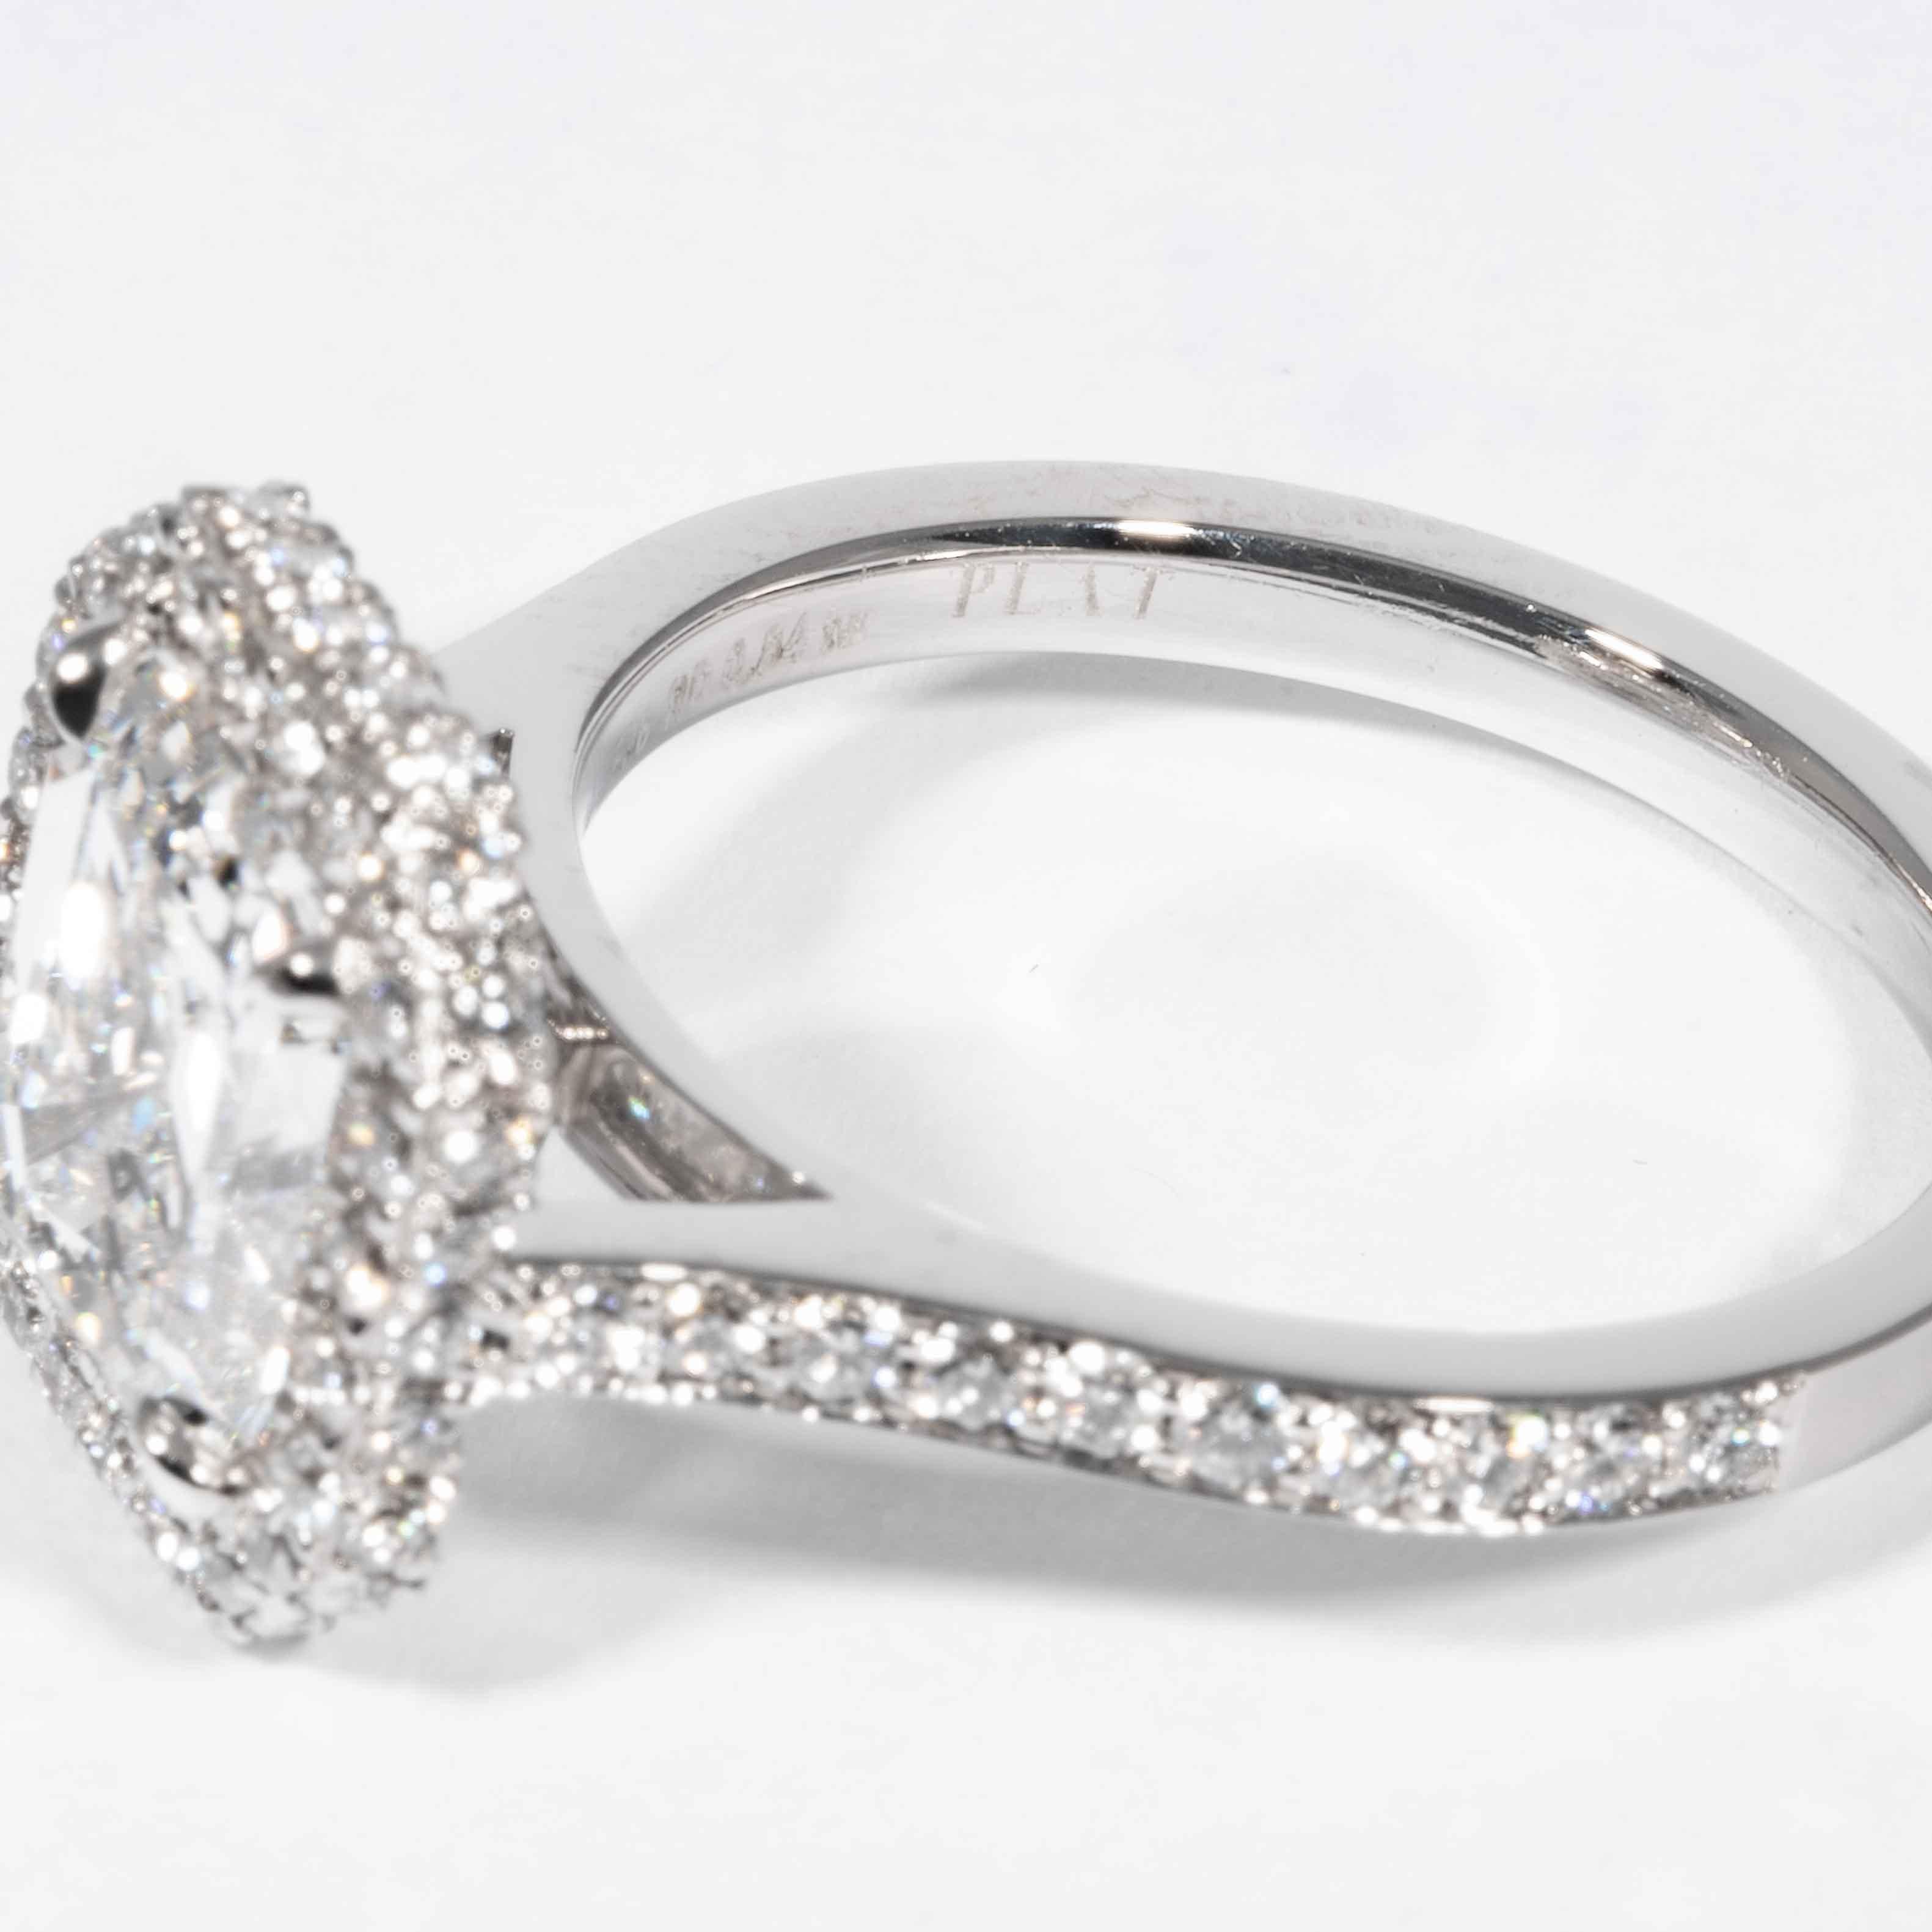 Women's or Men's Shreve, Crump & Low GIA Certified 2.74 Carat E SI1 Emerald Cut Diamond Ring